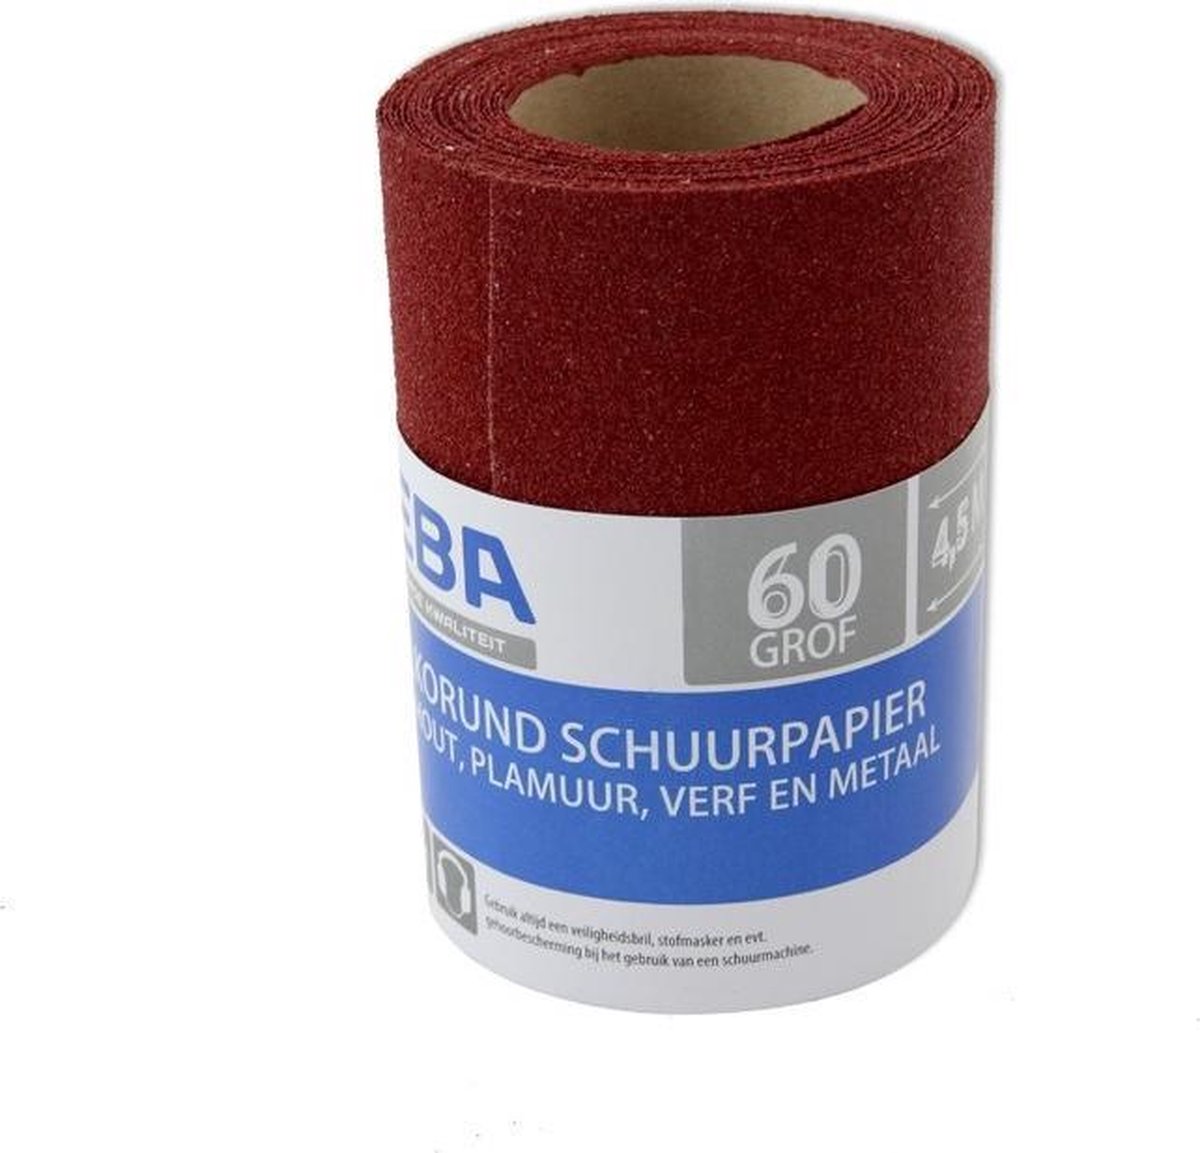 Schuurpapier op rol - Grof - P60 - 110mm x 4,5 meter - Korrelgrofte 60 - Verf/klus materiaal benodigdheden